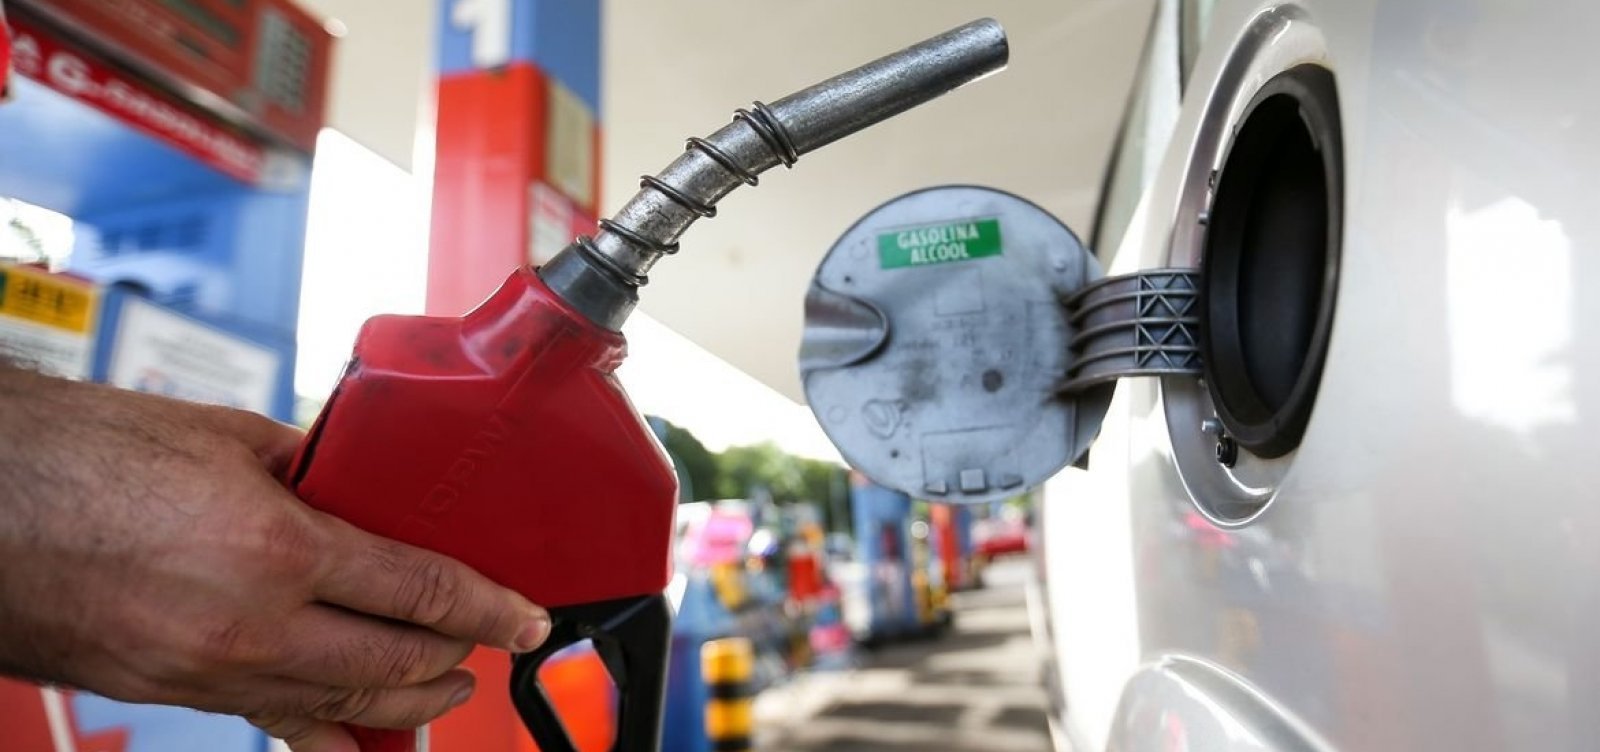 Encher o tanque de gasolina no Brasil consome 33% do salário mínimo